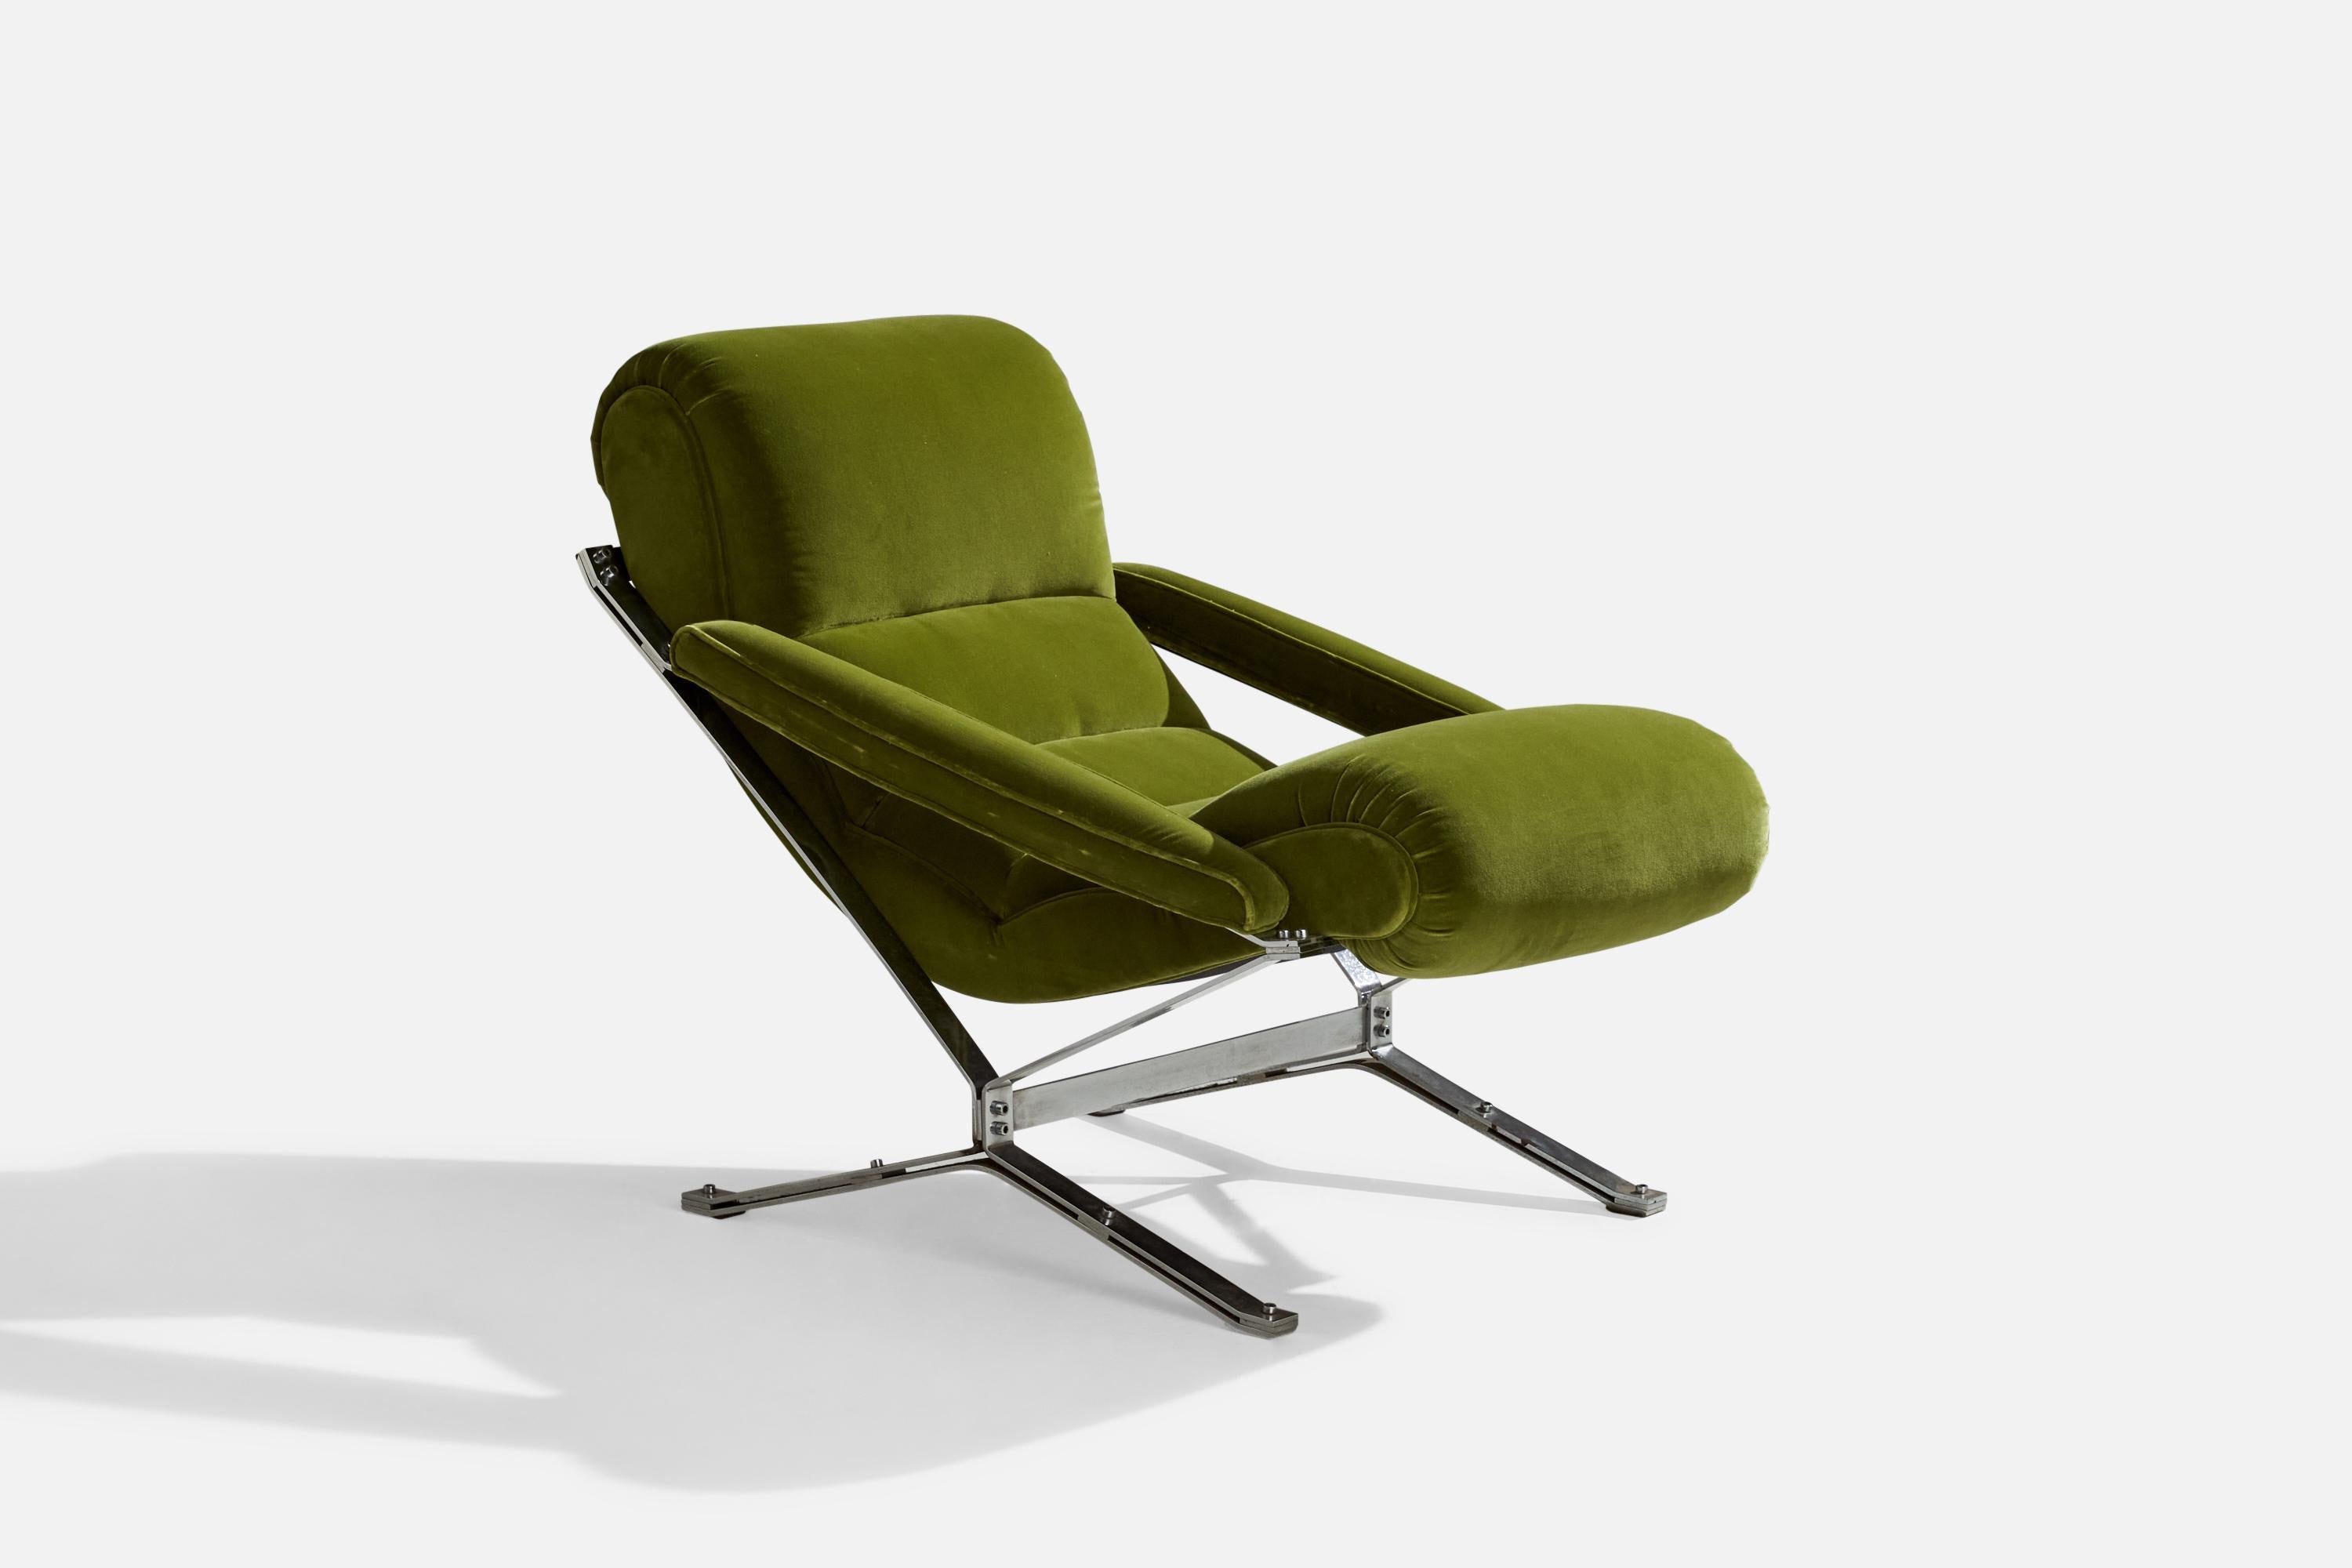 Schaukelstuhl aus Metall und grünem Samt, entworfen und hergestellt von Giulio Moscatelli, Italien, ca. 1960er Jahre.

Sitzhöhe 21